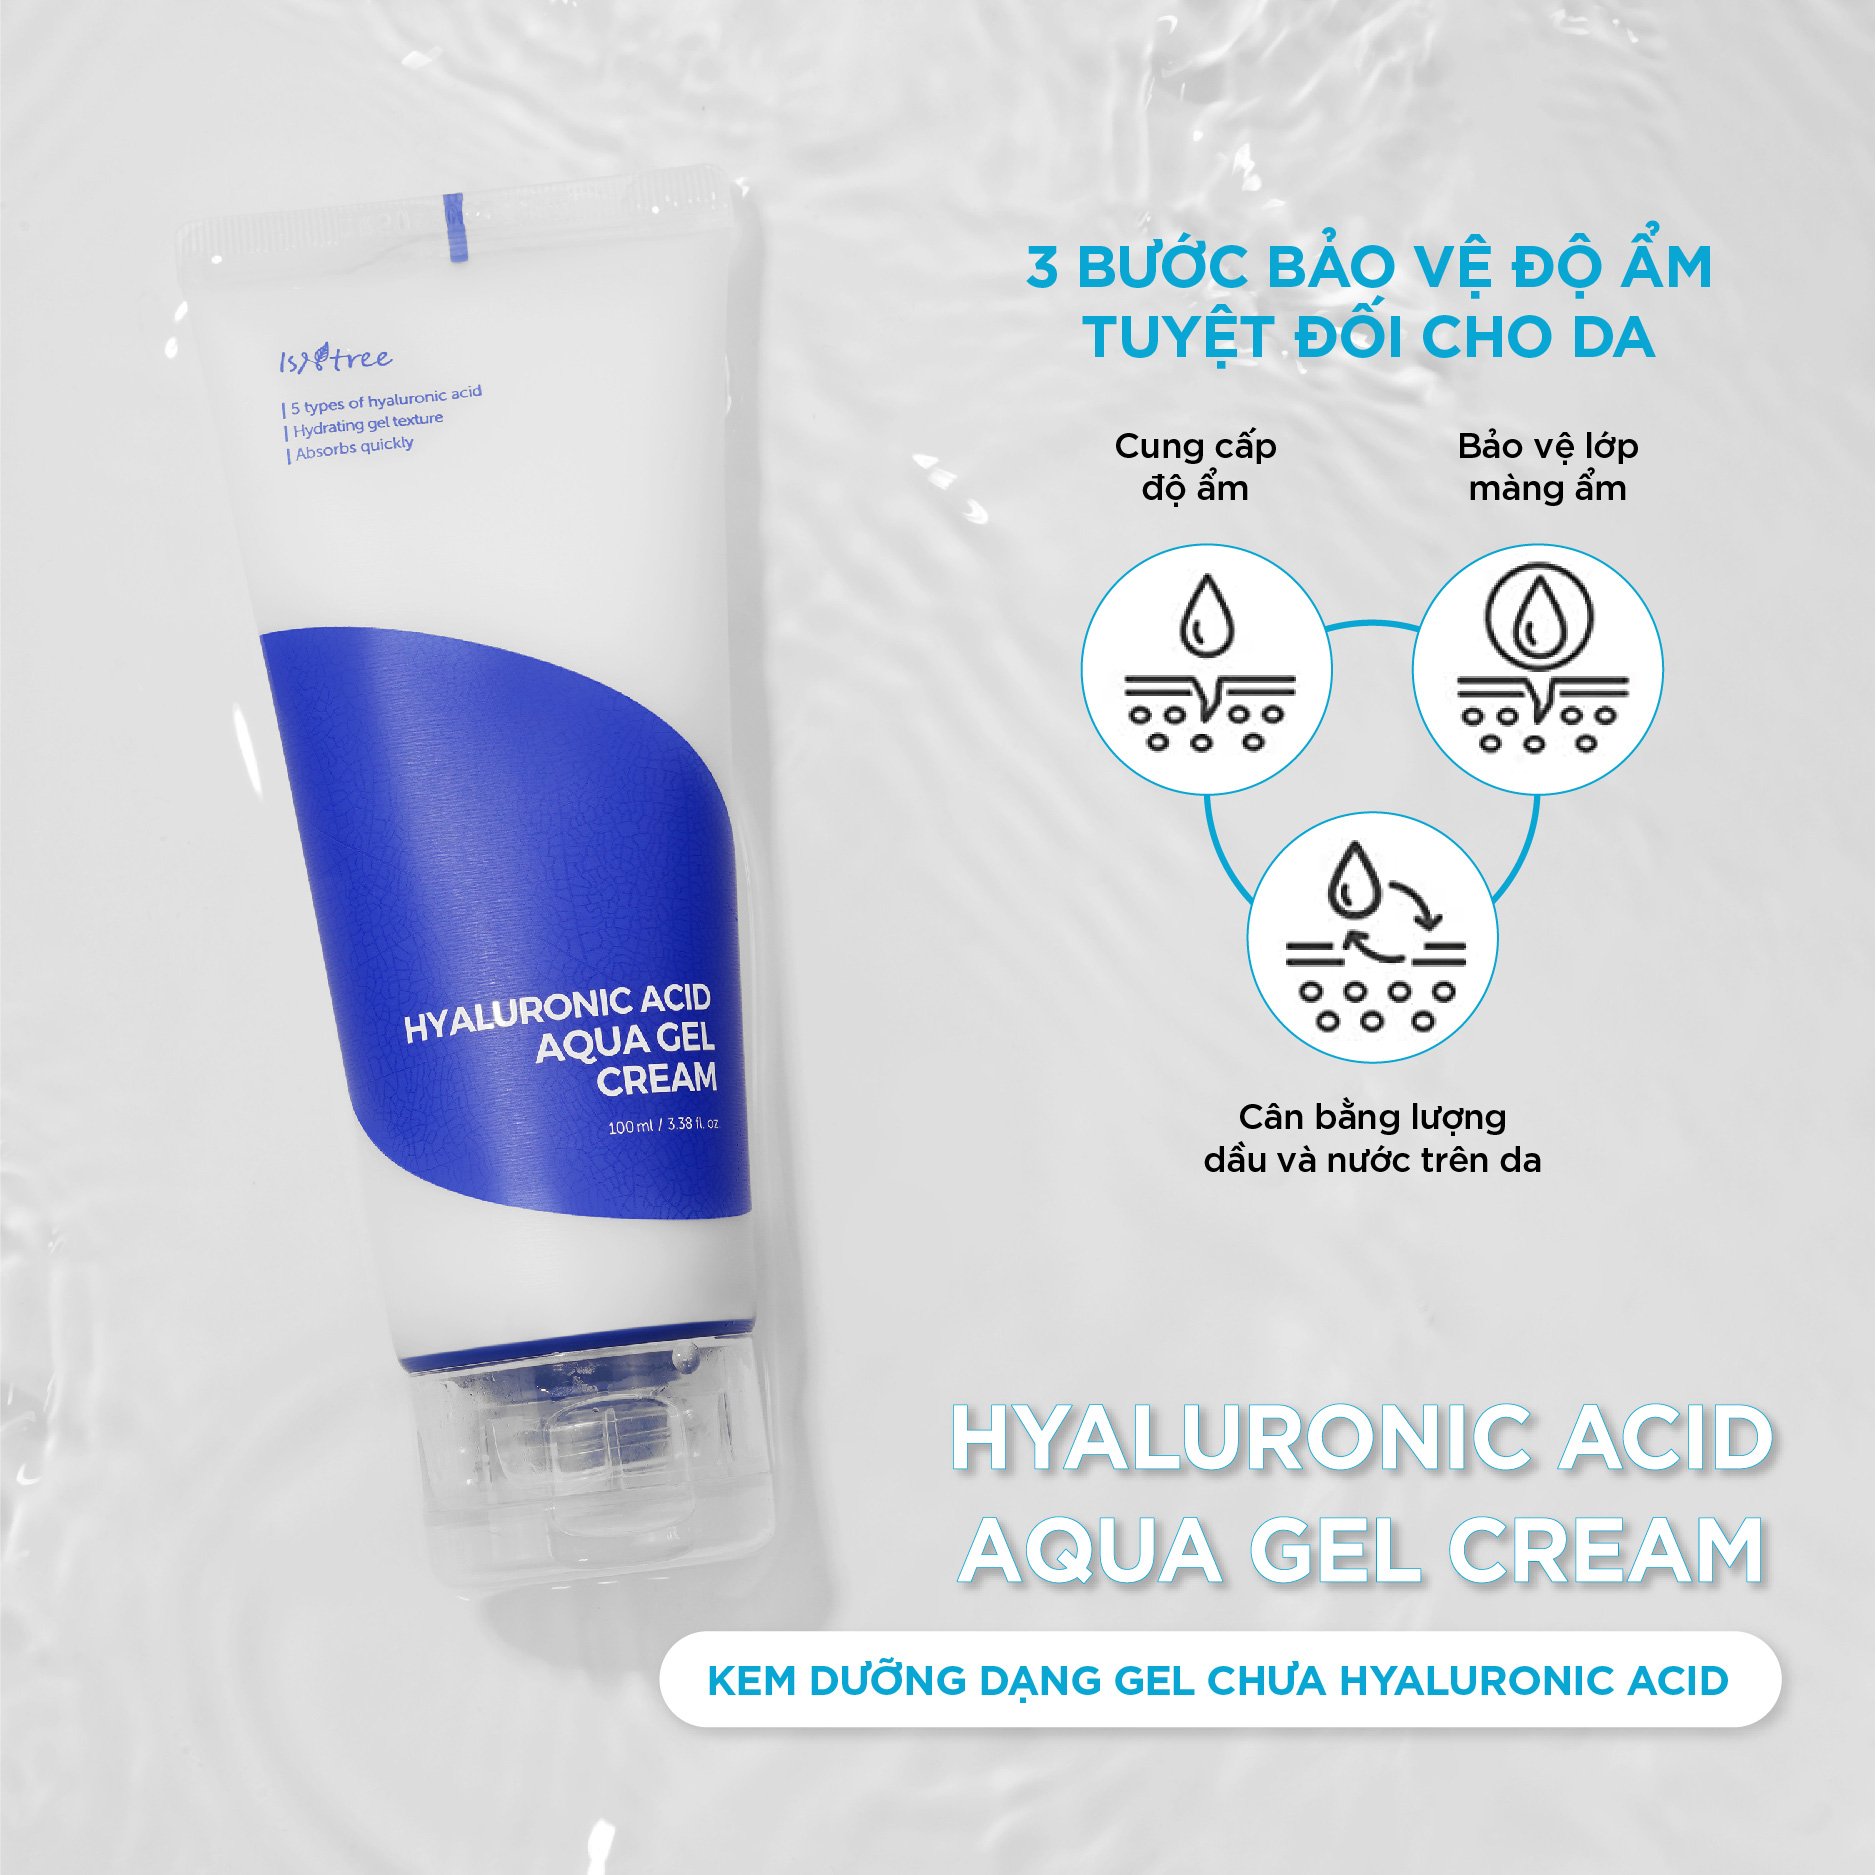 Kem dưỡng Isntree Hyaluronic Acid Aqua Gel Cream 100ml